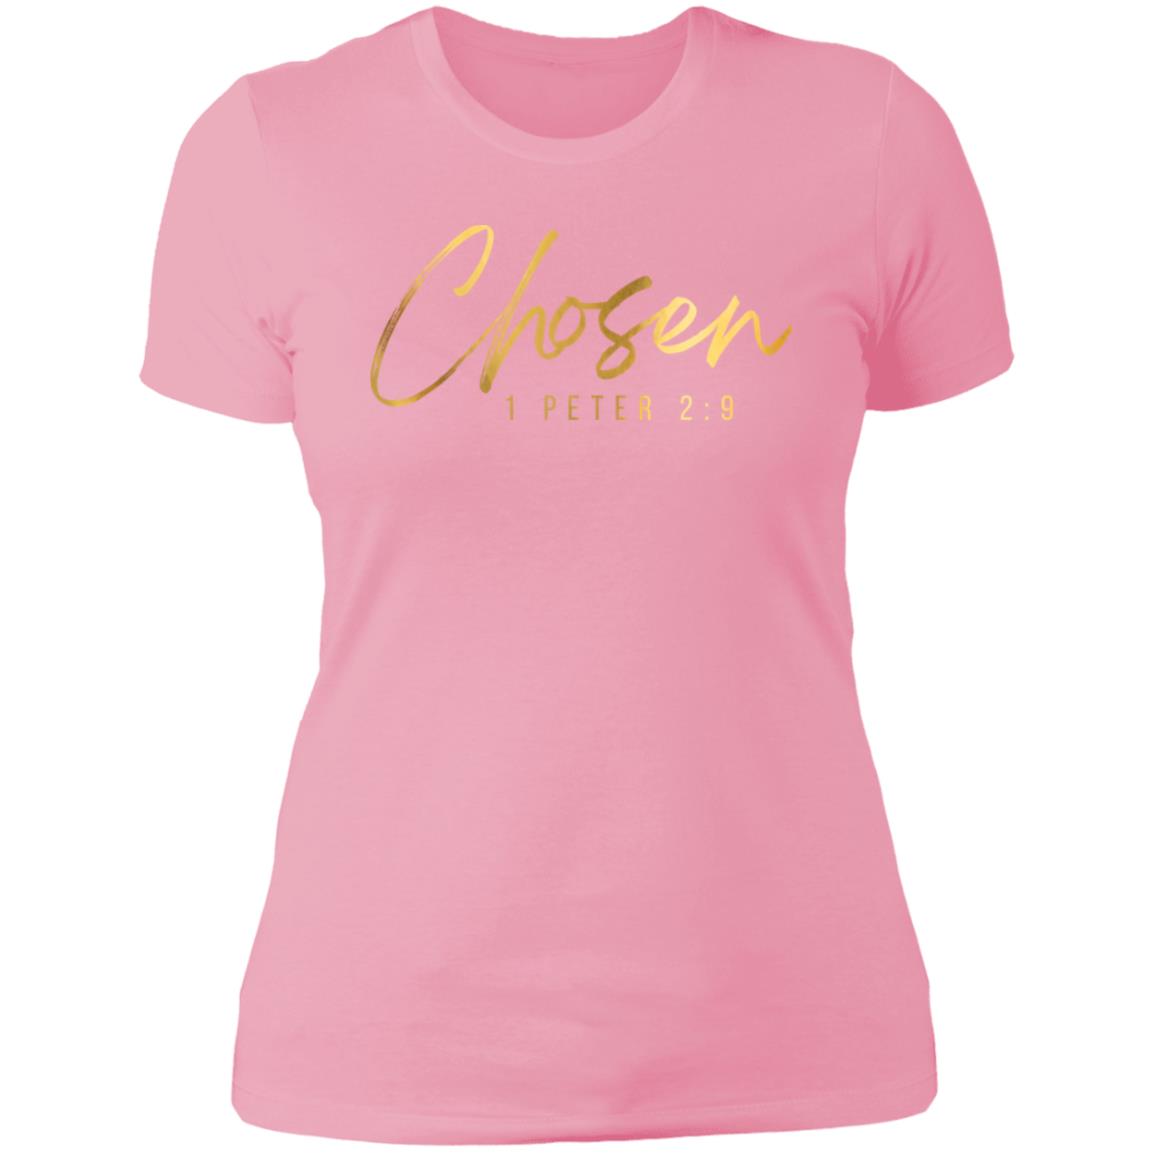 Chosen Gold Letters Ladies' Slim-Fit T-Shirt